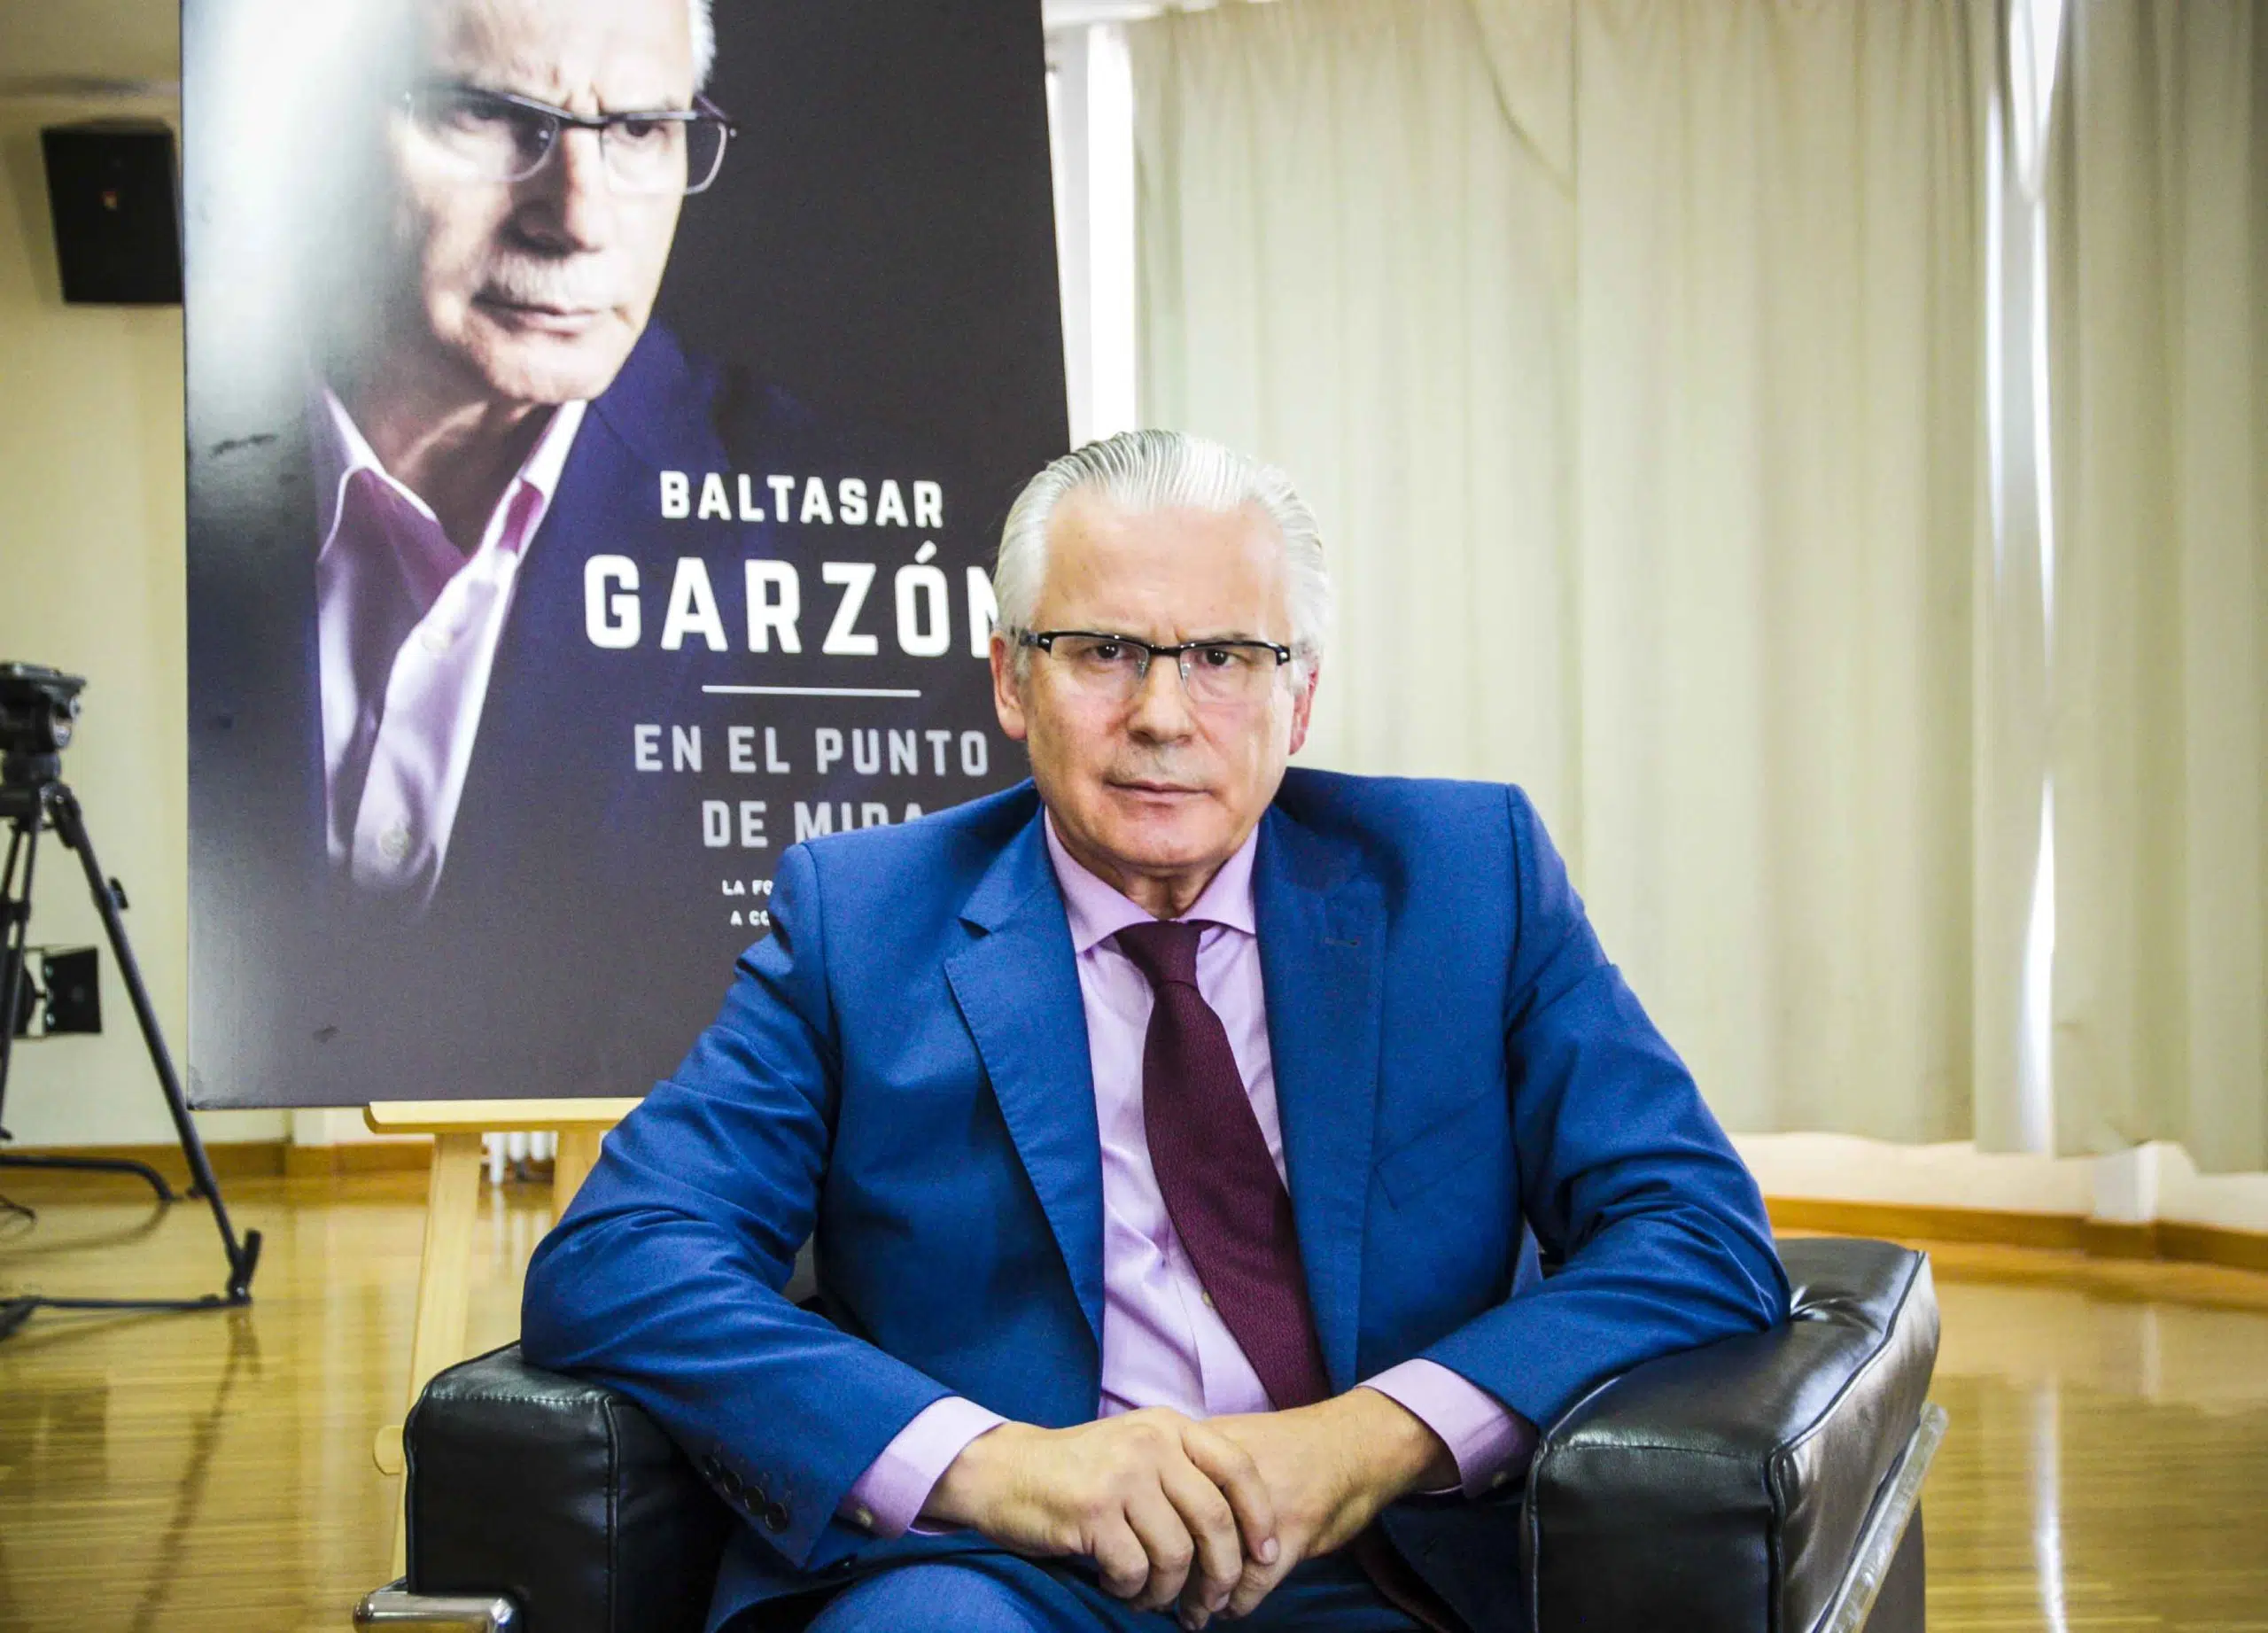 El Tribunal Supremo ratifica el archivo de la querella por injurias de Baltasar Garzón contra Joaquín Vidal, director de Moncloa.com